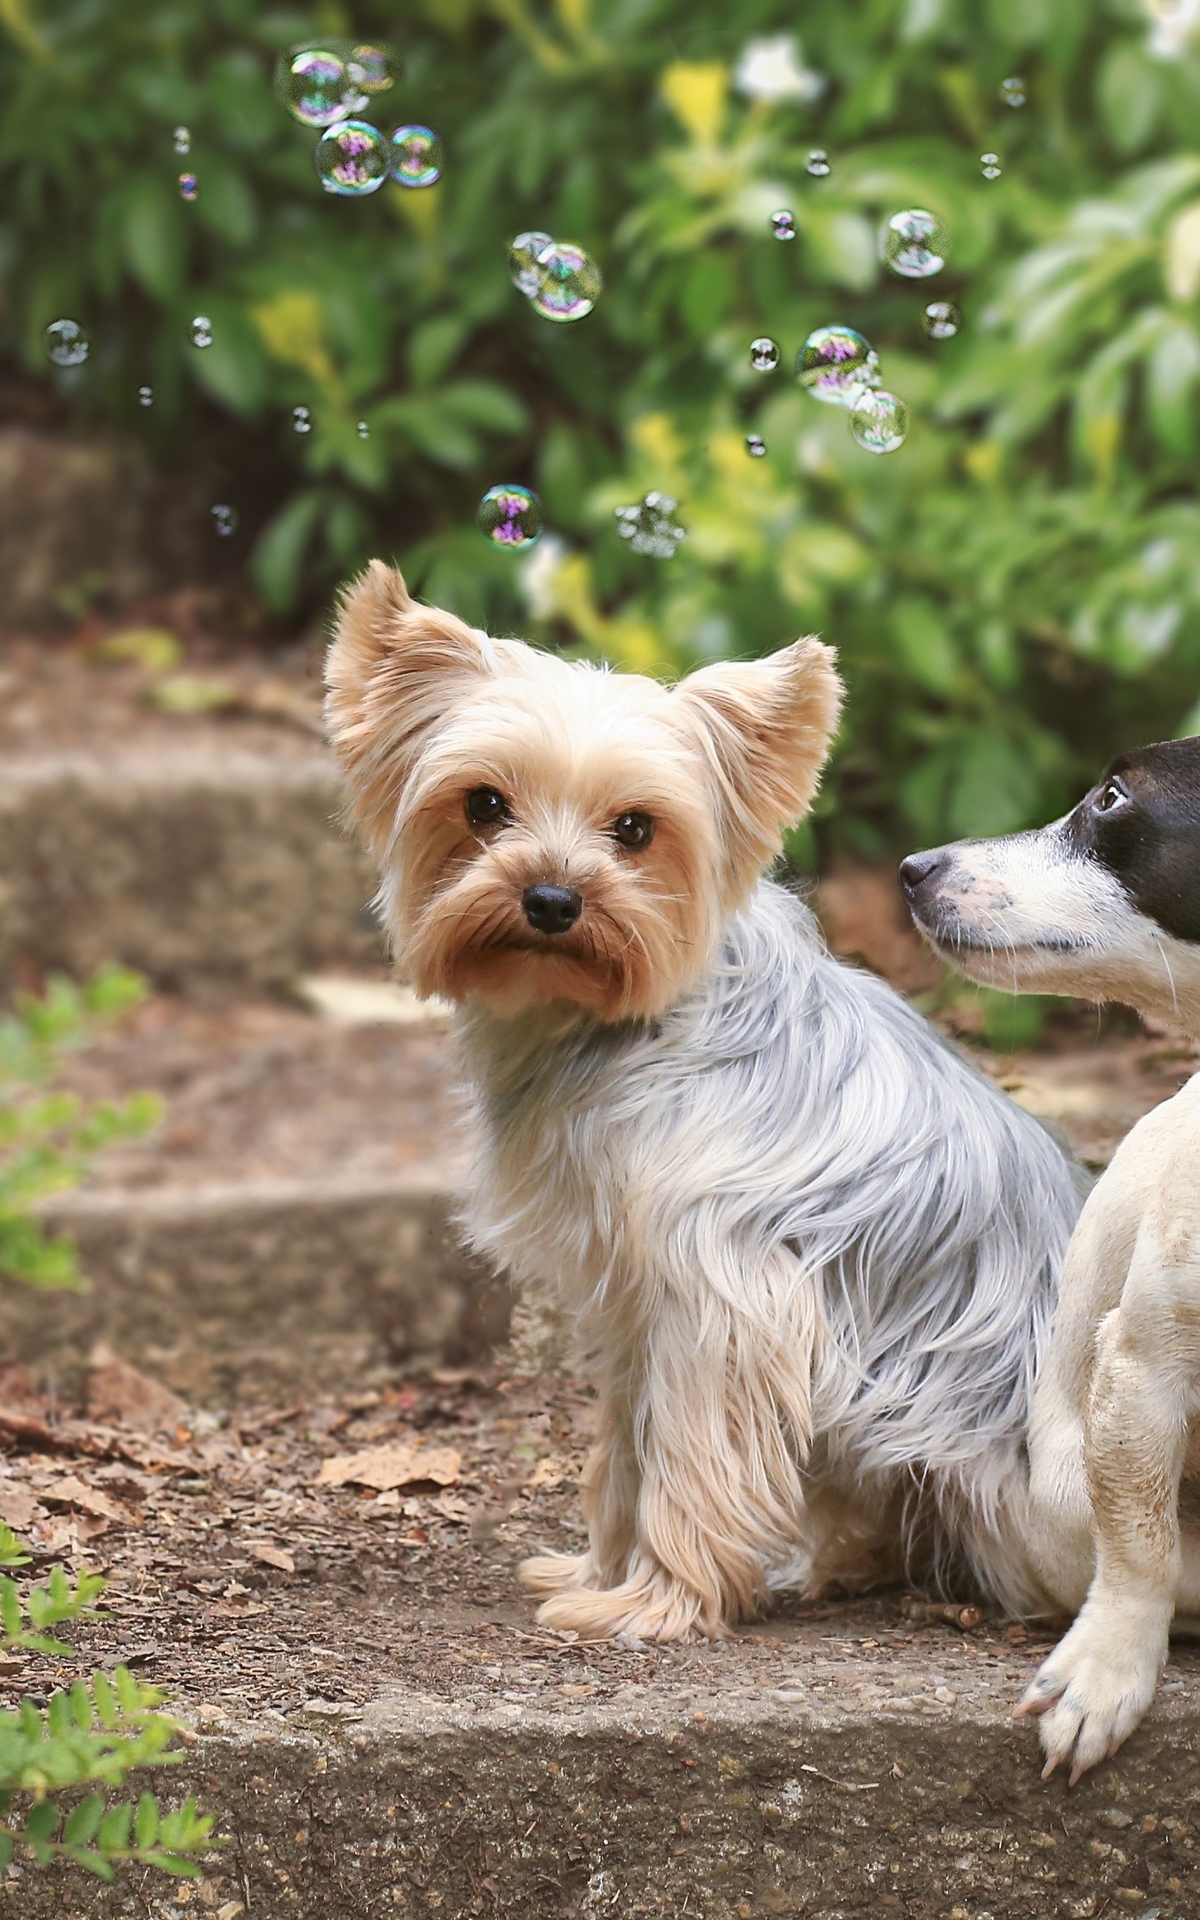 Картинка: Собаки, Dogs, пара, две, ступеньки, сидят, мыльные пузыри, Bubbles, зелень, йоркширский терьер